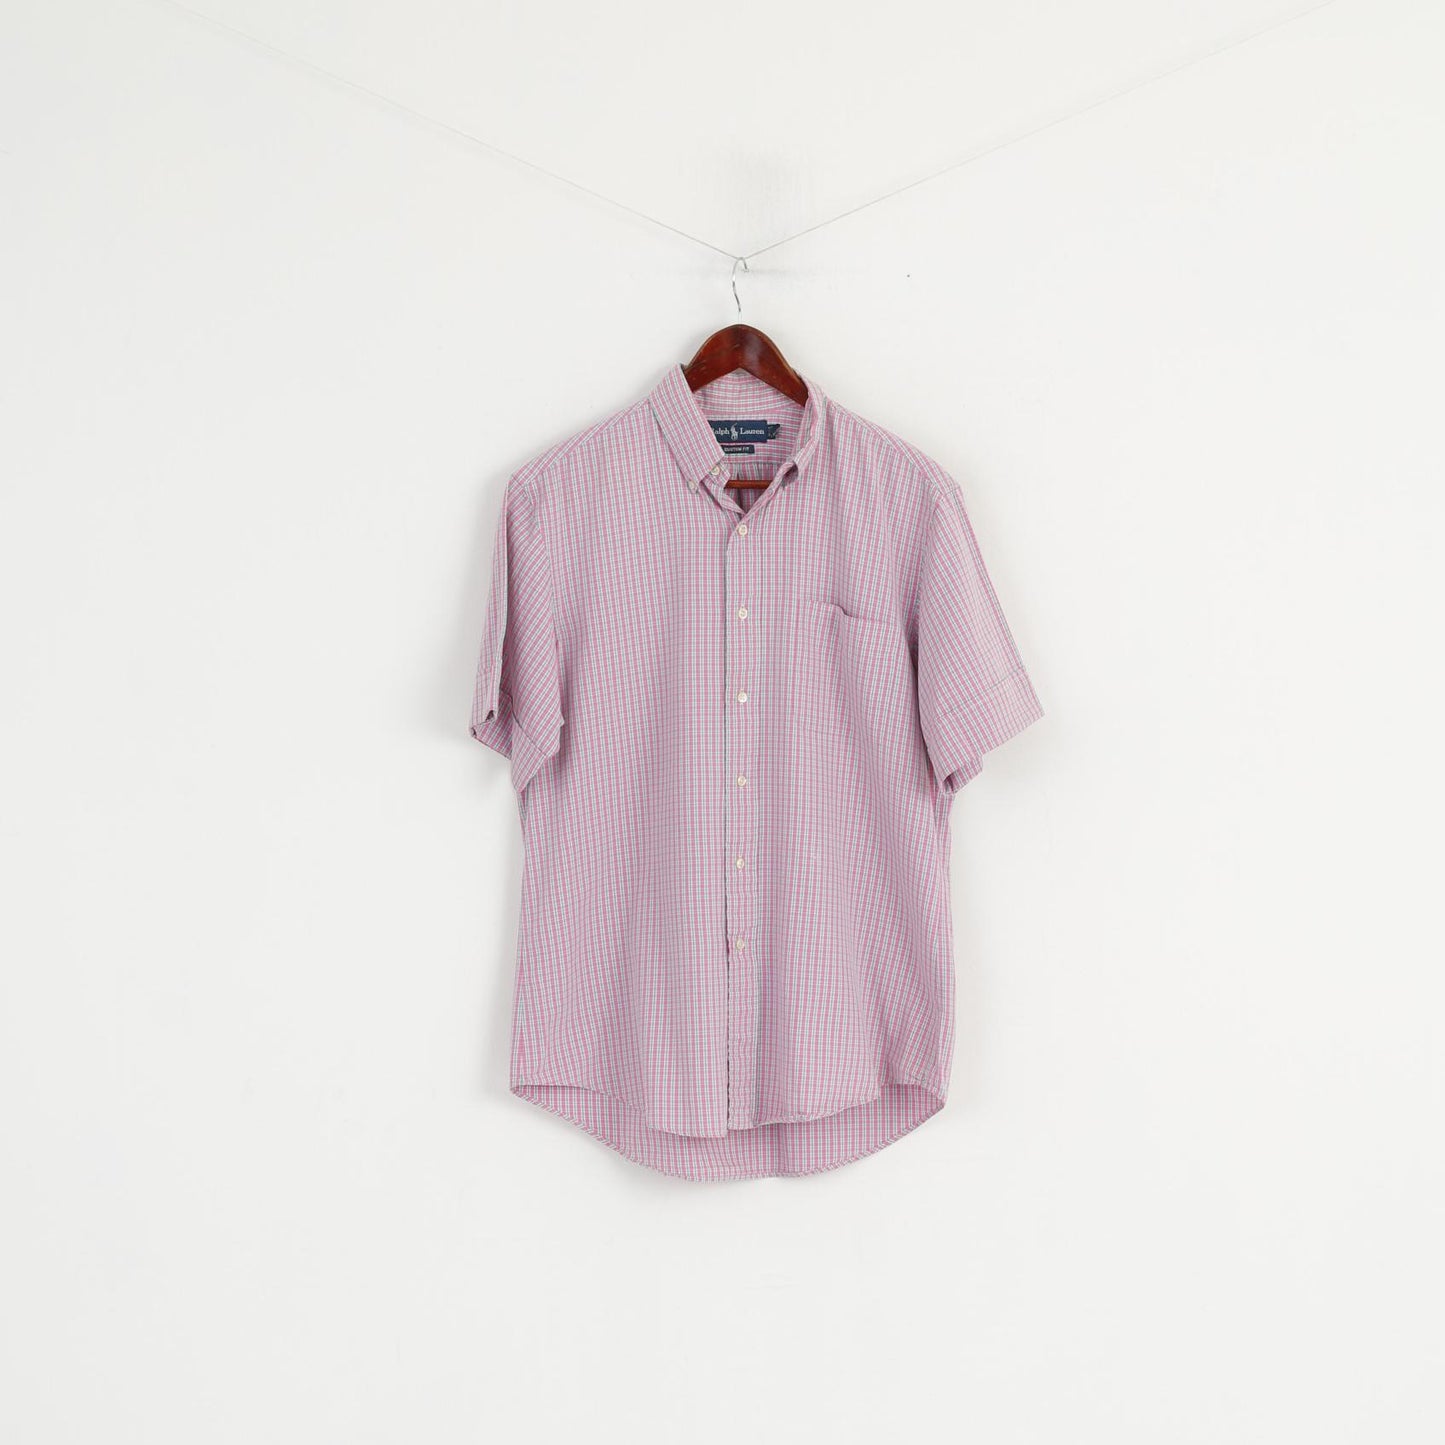 Ralph Lauren Men 16 L Casual Shirt Pink Check Button Down Collar Short Sleeve Top